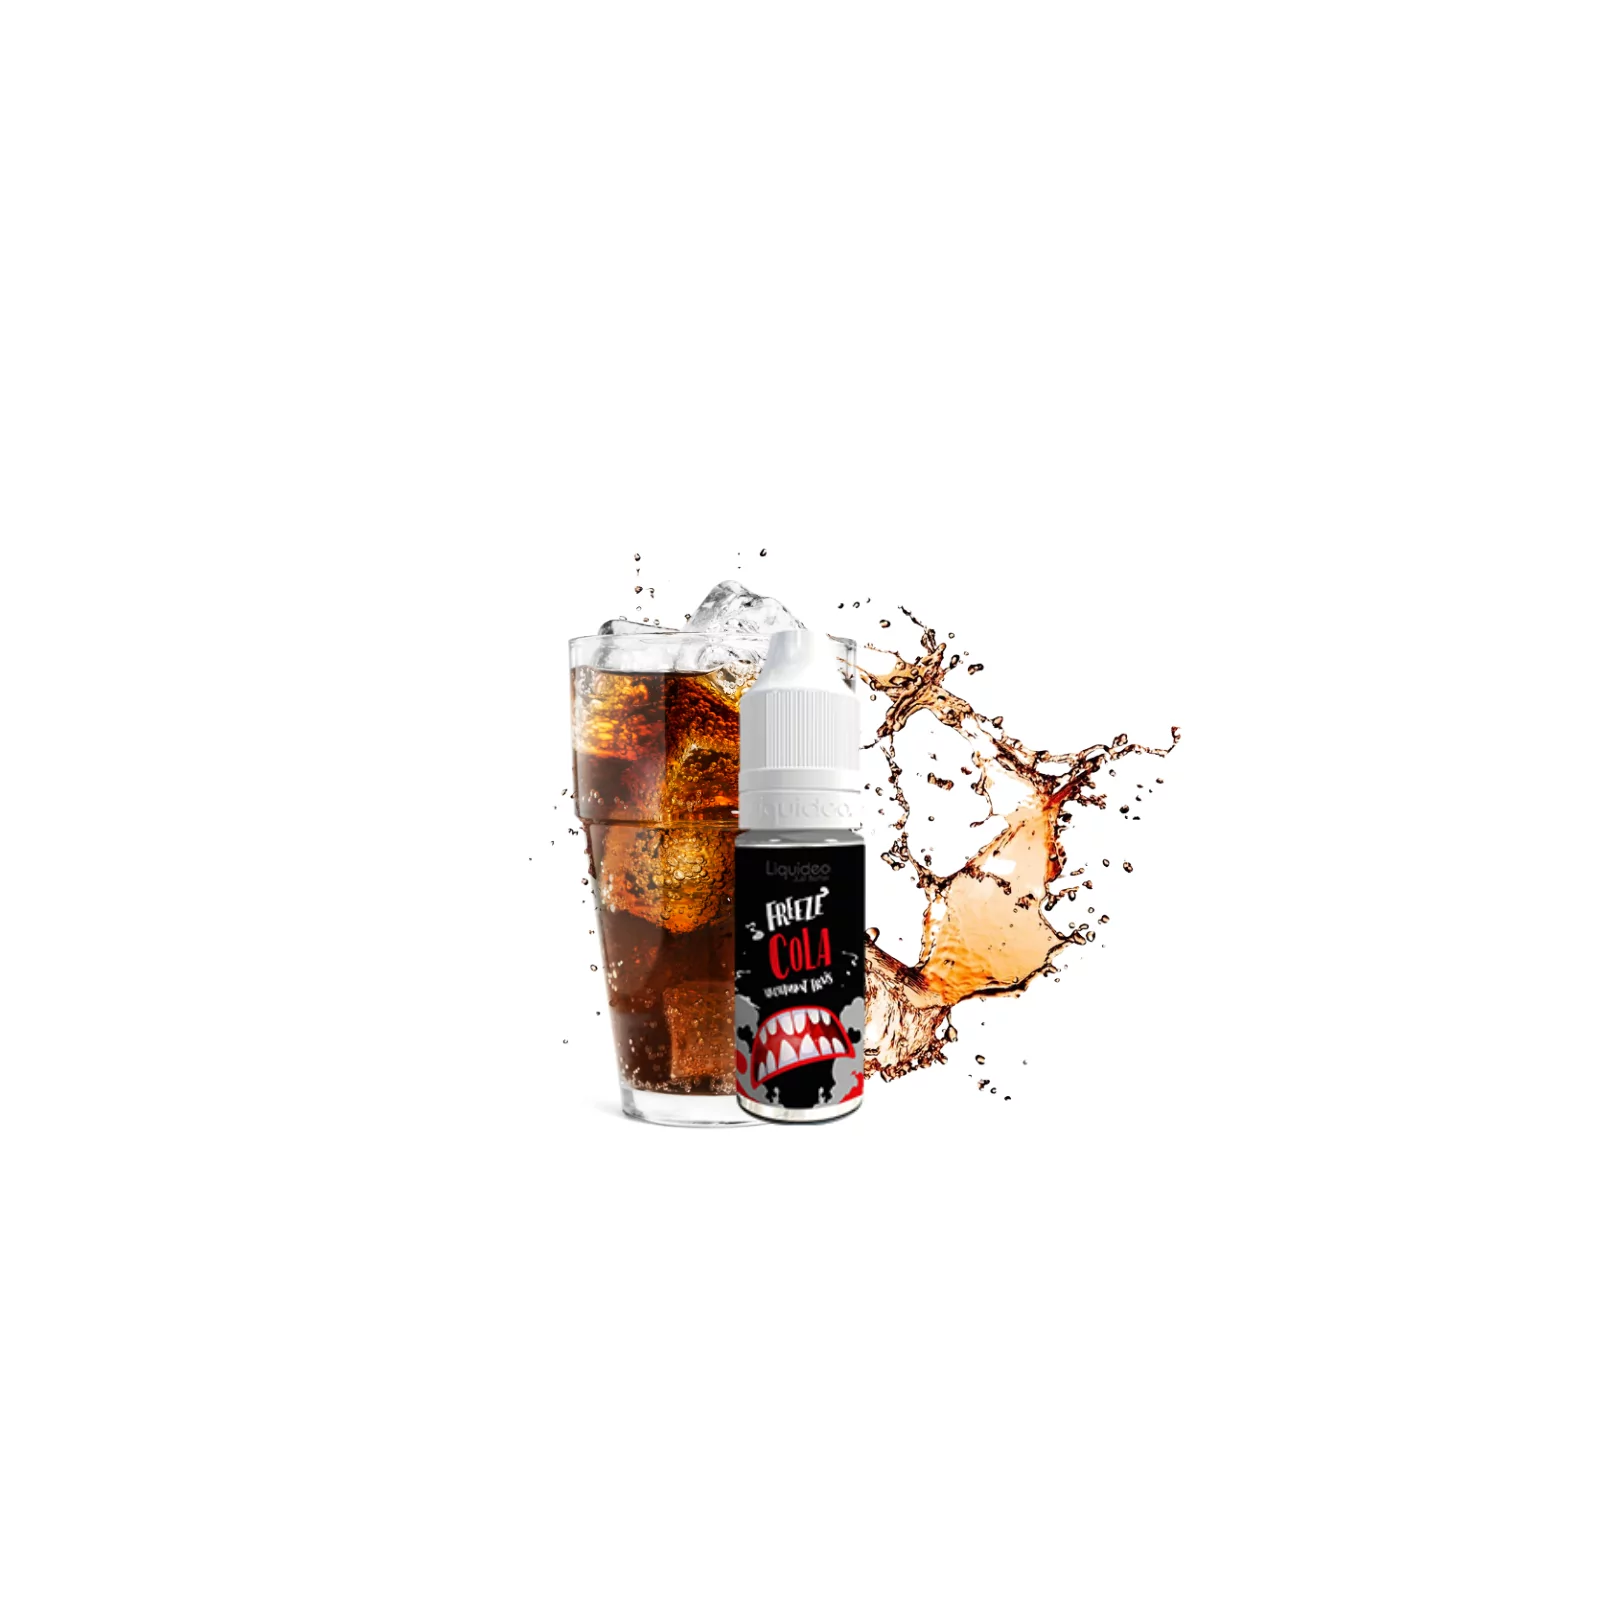 E-liquide Bonbon Cola (Candy Cola) 10ml - Alfaliquid à 5,90 €